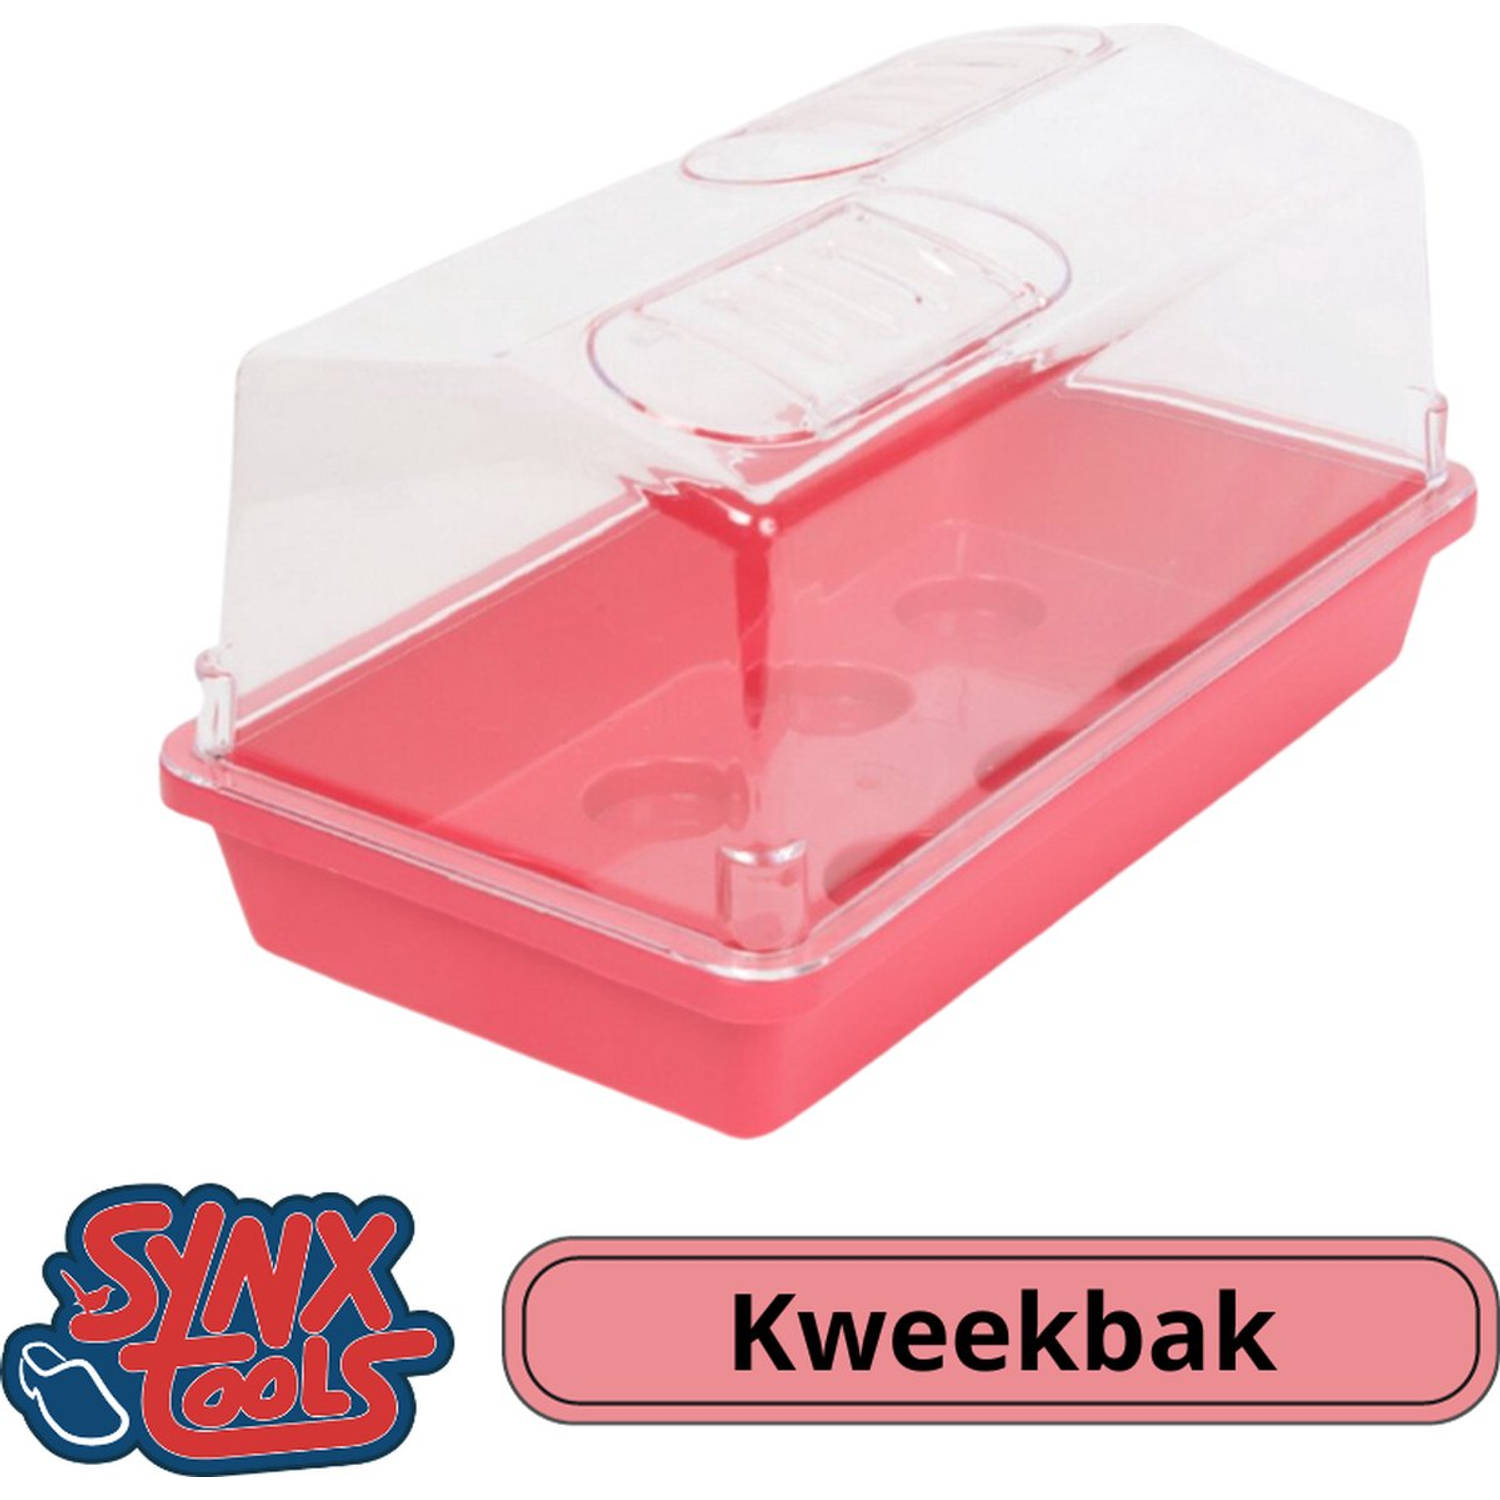 Synx Tools Kweekbak Roze kweekkastje met deksel 32cm - Tuinieren/Moestuinbak - Moestuin artikelen - Tuin benodigdheden - Vensterbank